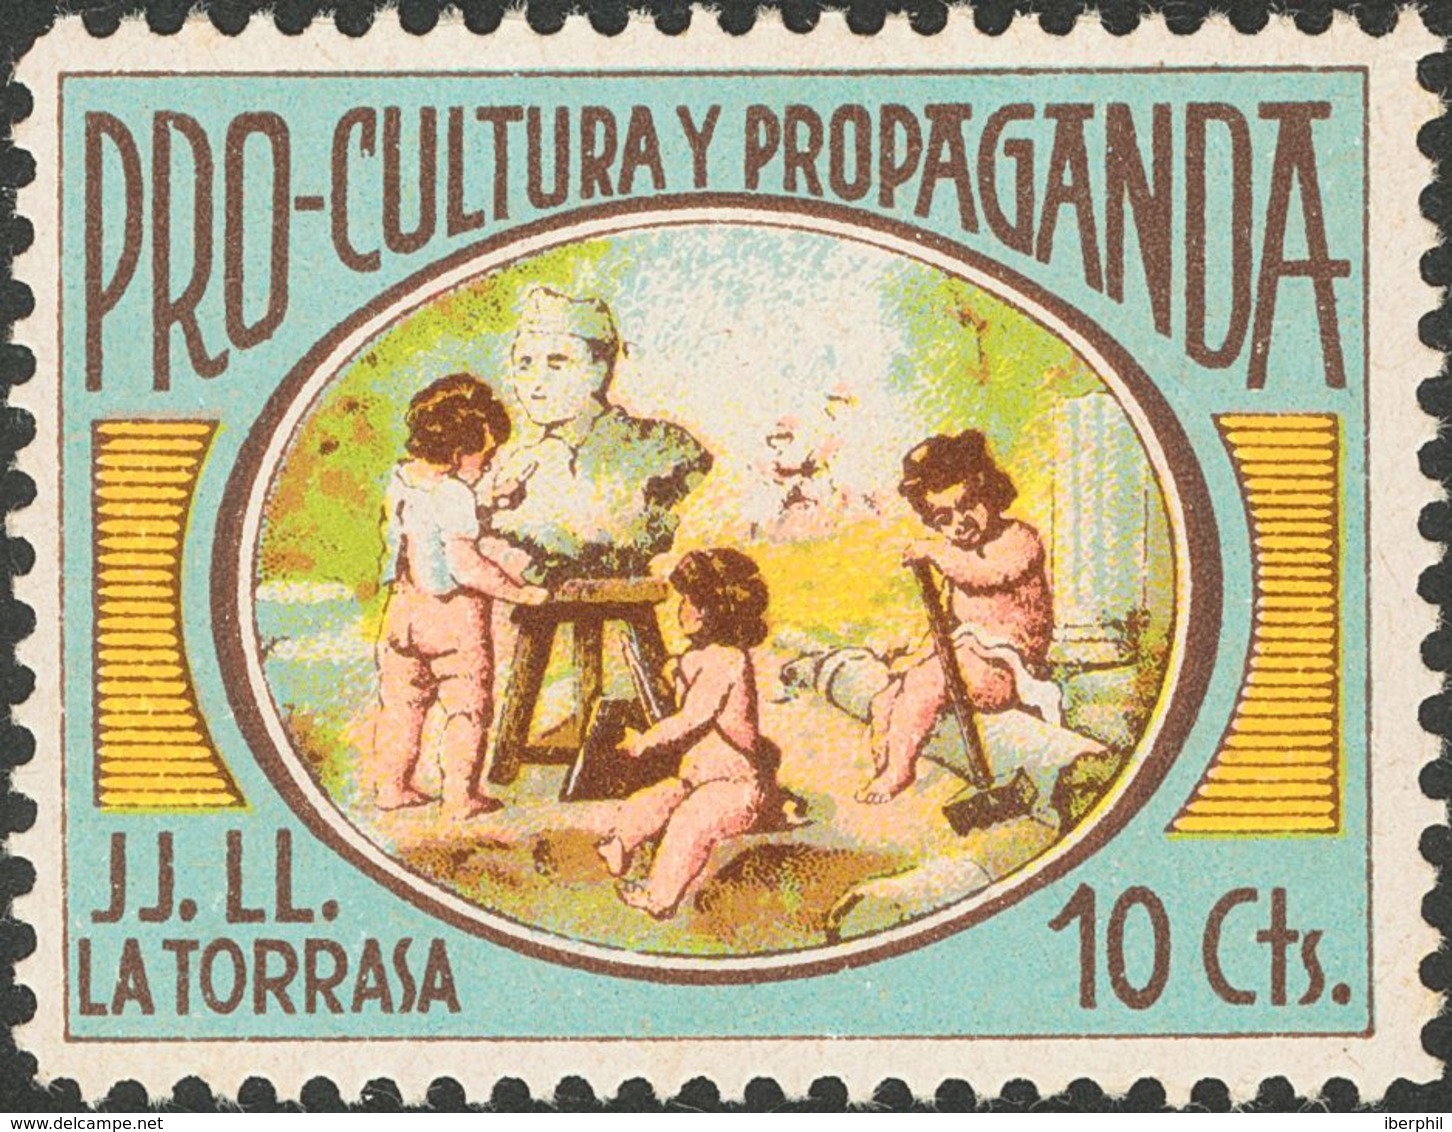 *. 1937. 10 Cts Multicolor. HOSPITALET-LA TORRASA (BARCELONA). PRO CULTURA Y PROPAGANDA J.J.L.L. MAGNIFICO Y RARO. (Feso - Other & Unclassified